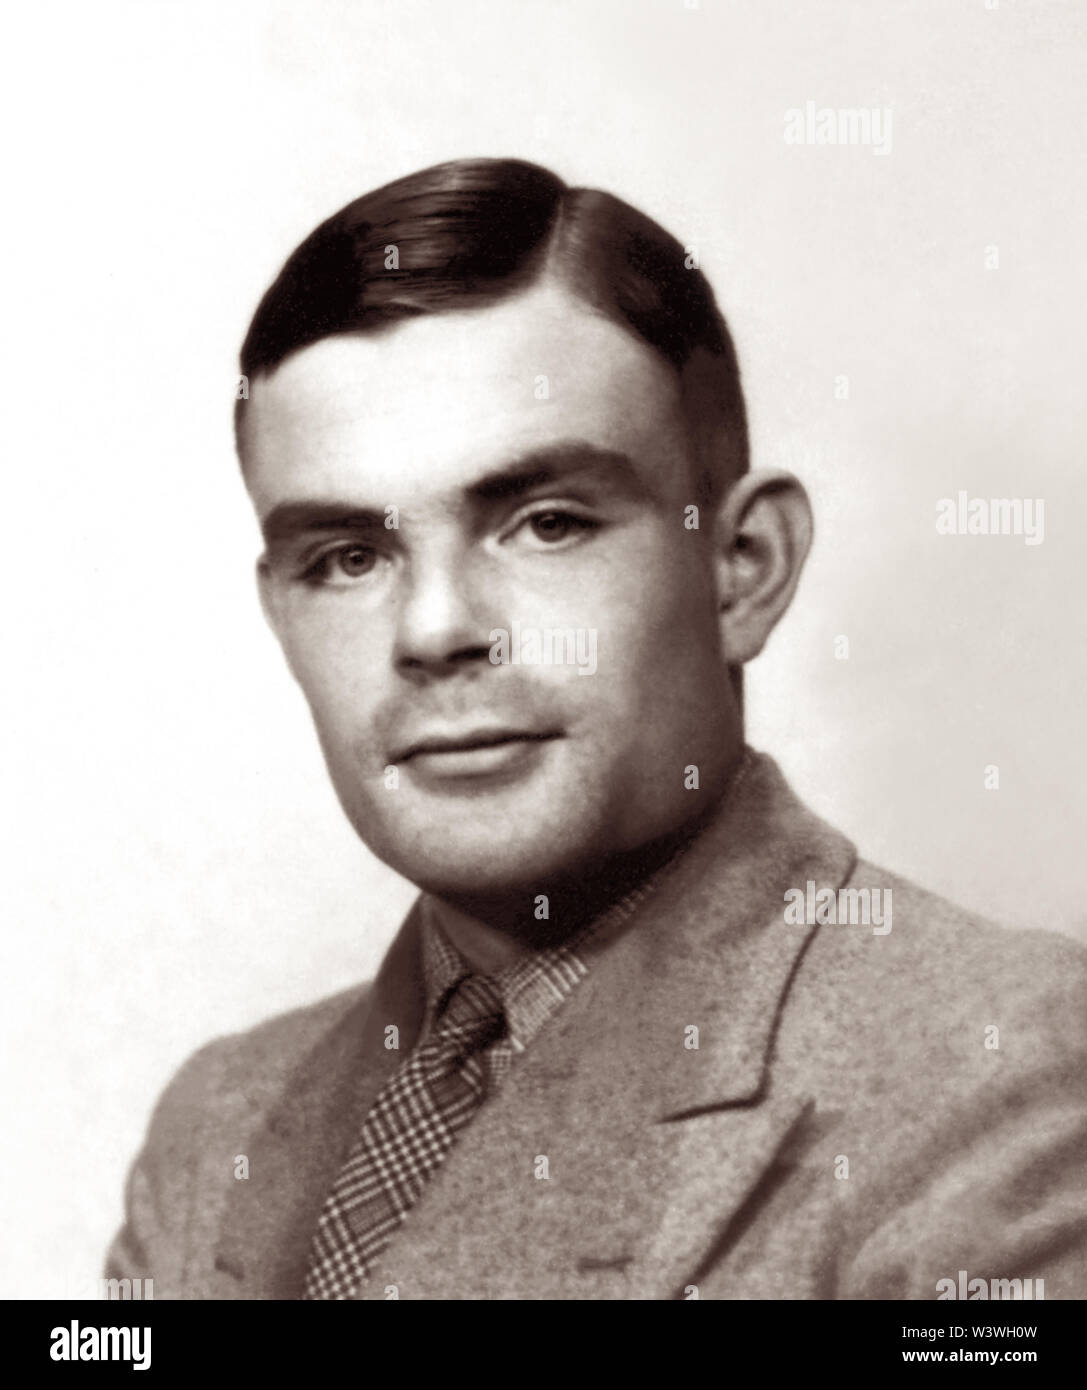 Alan Mathison Turing (1912-1954), britischer Mathematiker, ist weithin als der Vater der Theoretischen Informatik und Künstliche Intelligenz. Während des Zweiten Weltkrieges arbeitete er für die Regierung Code und Cypher Schule in Bletchley Park, der Britische codebreaking Zentrum, dass Ultra Intelligenz produziert. Für eine Weile Turing Hütte 8, die verantwortlich für die Deutsche Marine Kryptoanalyse geführt. Turing spielte eine zentrale Rolle bei Rissbildung abgefangenen verschlüsselten Botschaften, die dazu beitrug, dass die Alliierten die Nazis zu besiegen. (Foto ca. 1930s) Stockfoto